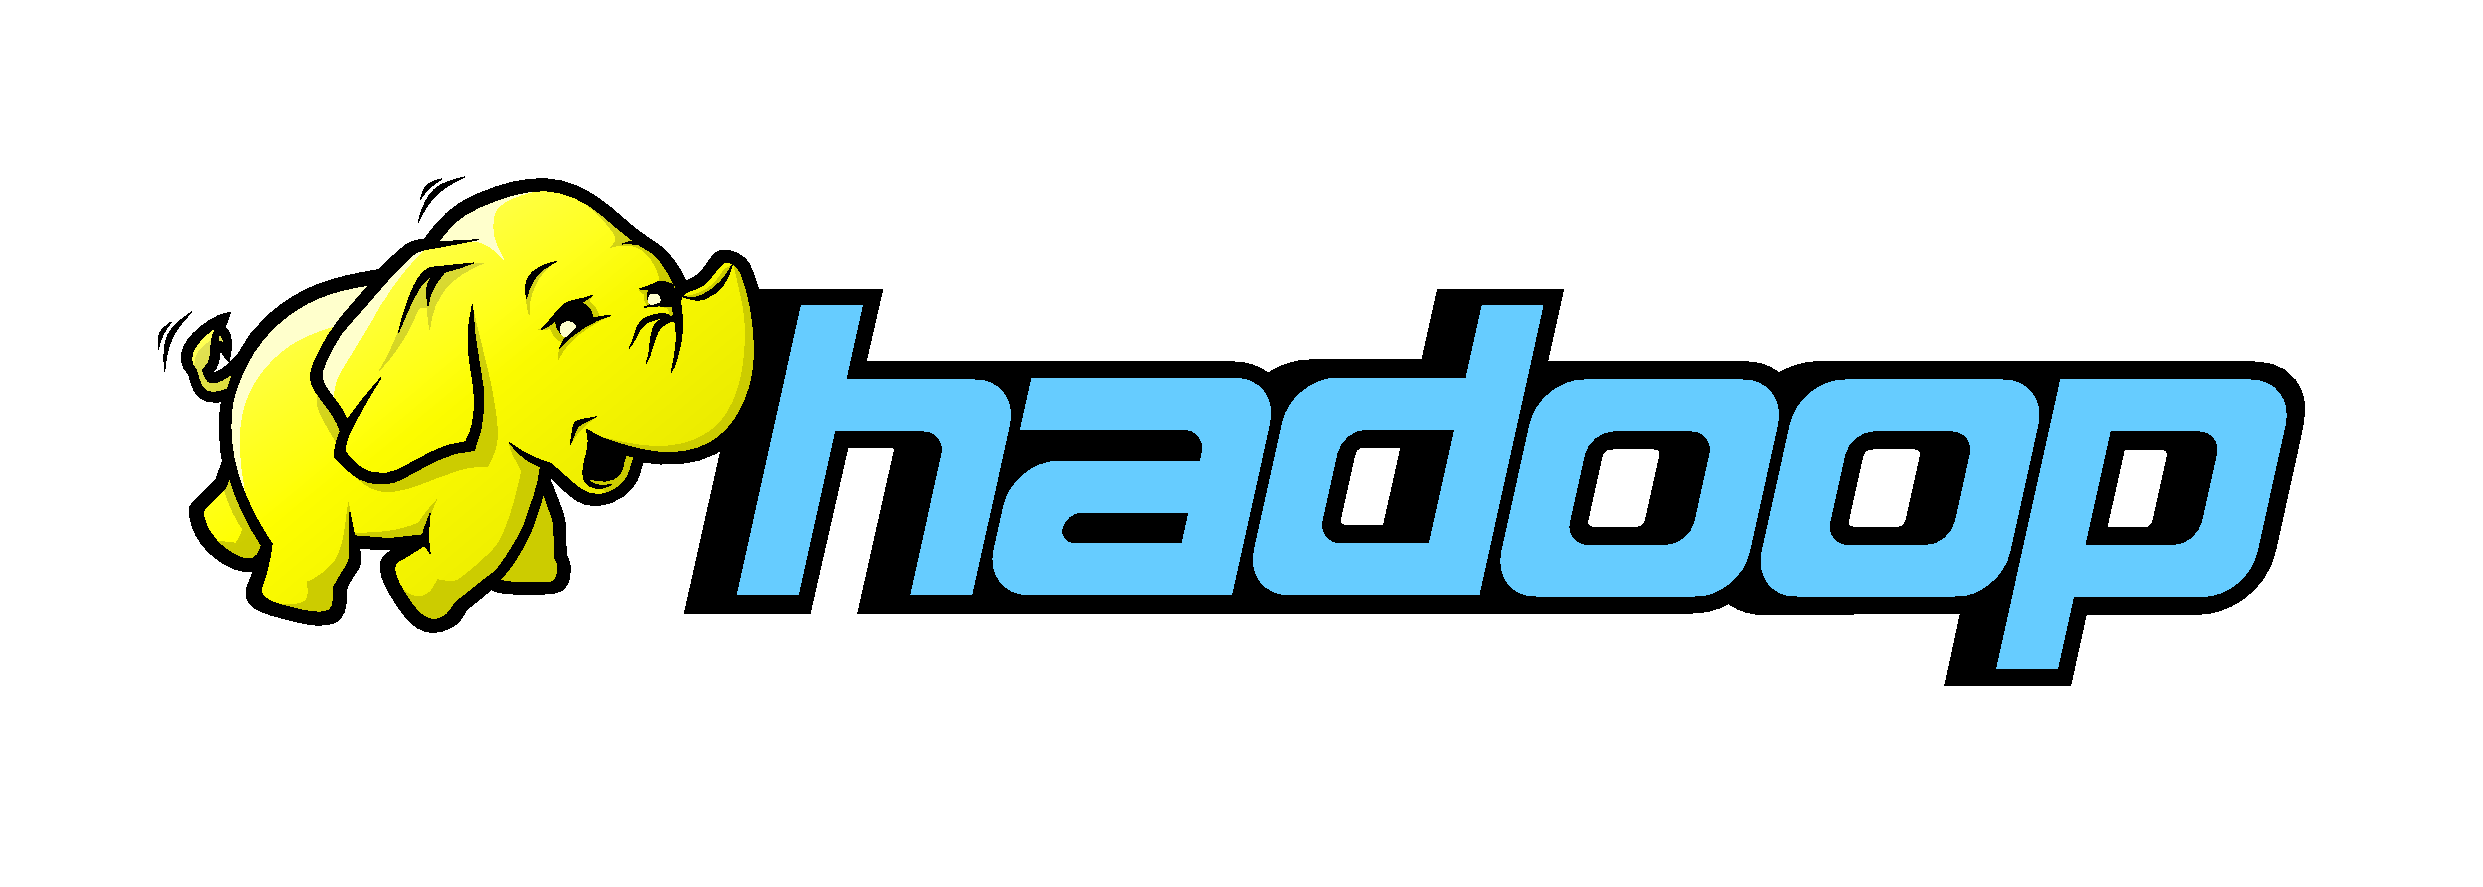 Hadoop_robustwareinccom.png